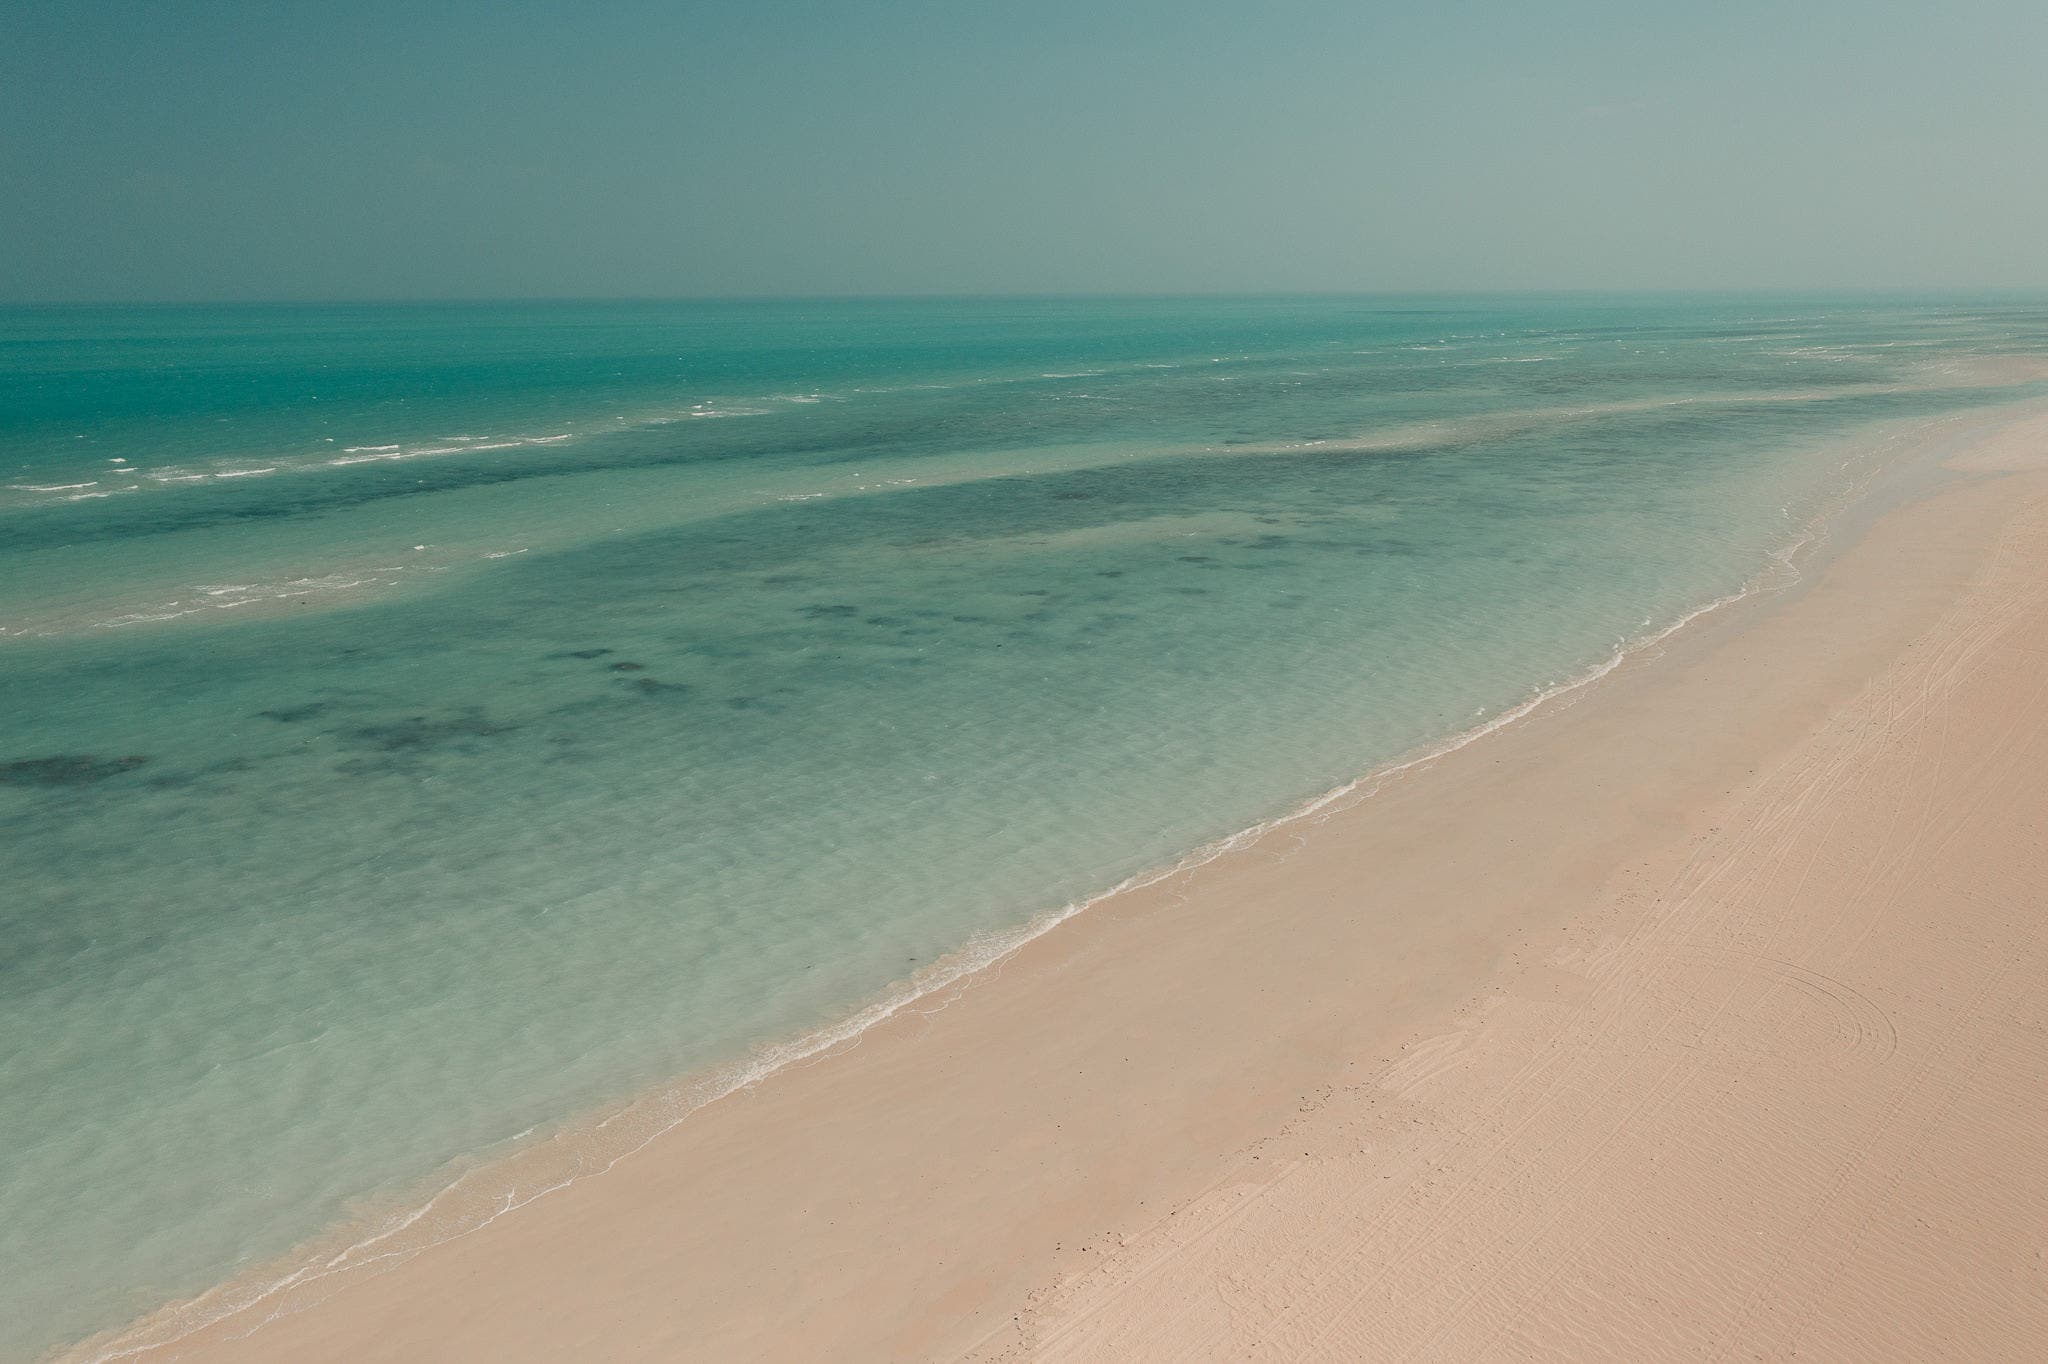 Las mejores playas públicas de Catar